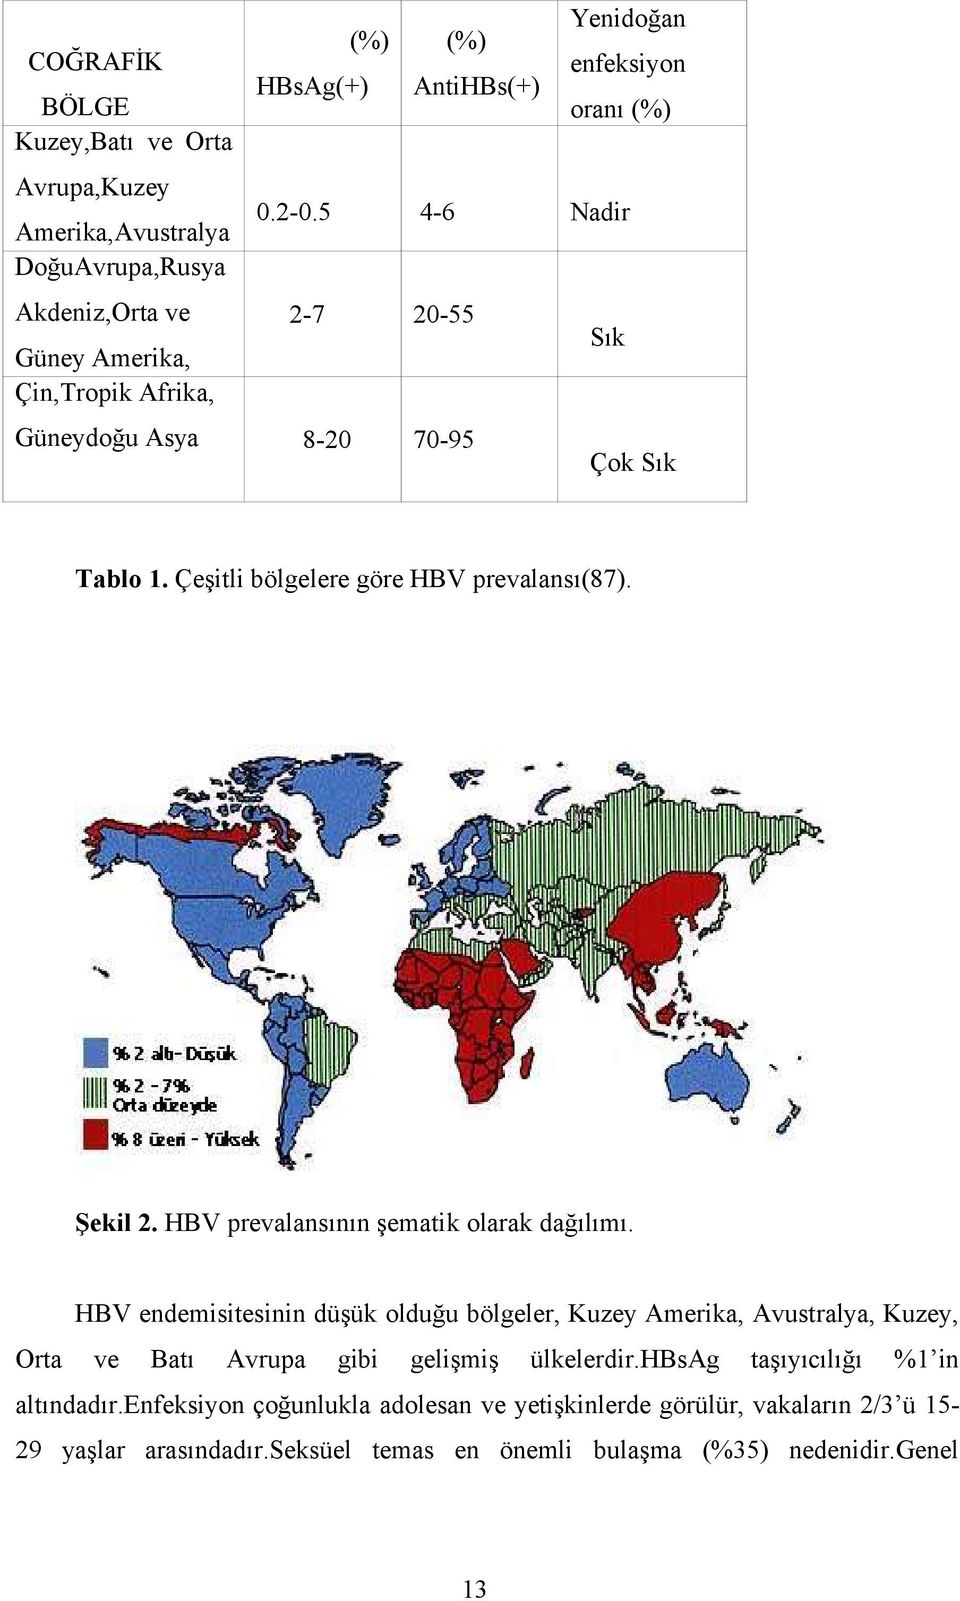 HBV prevalansının şematik olarak dağılımı. HBV endemisitesinin düşük olduğu bölgeler, Kuzey Amerika, Avustralya, Kuzey, Orta ve Batı Avrupa gibi gelişmiş ülkelerdir.